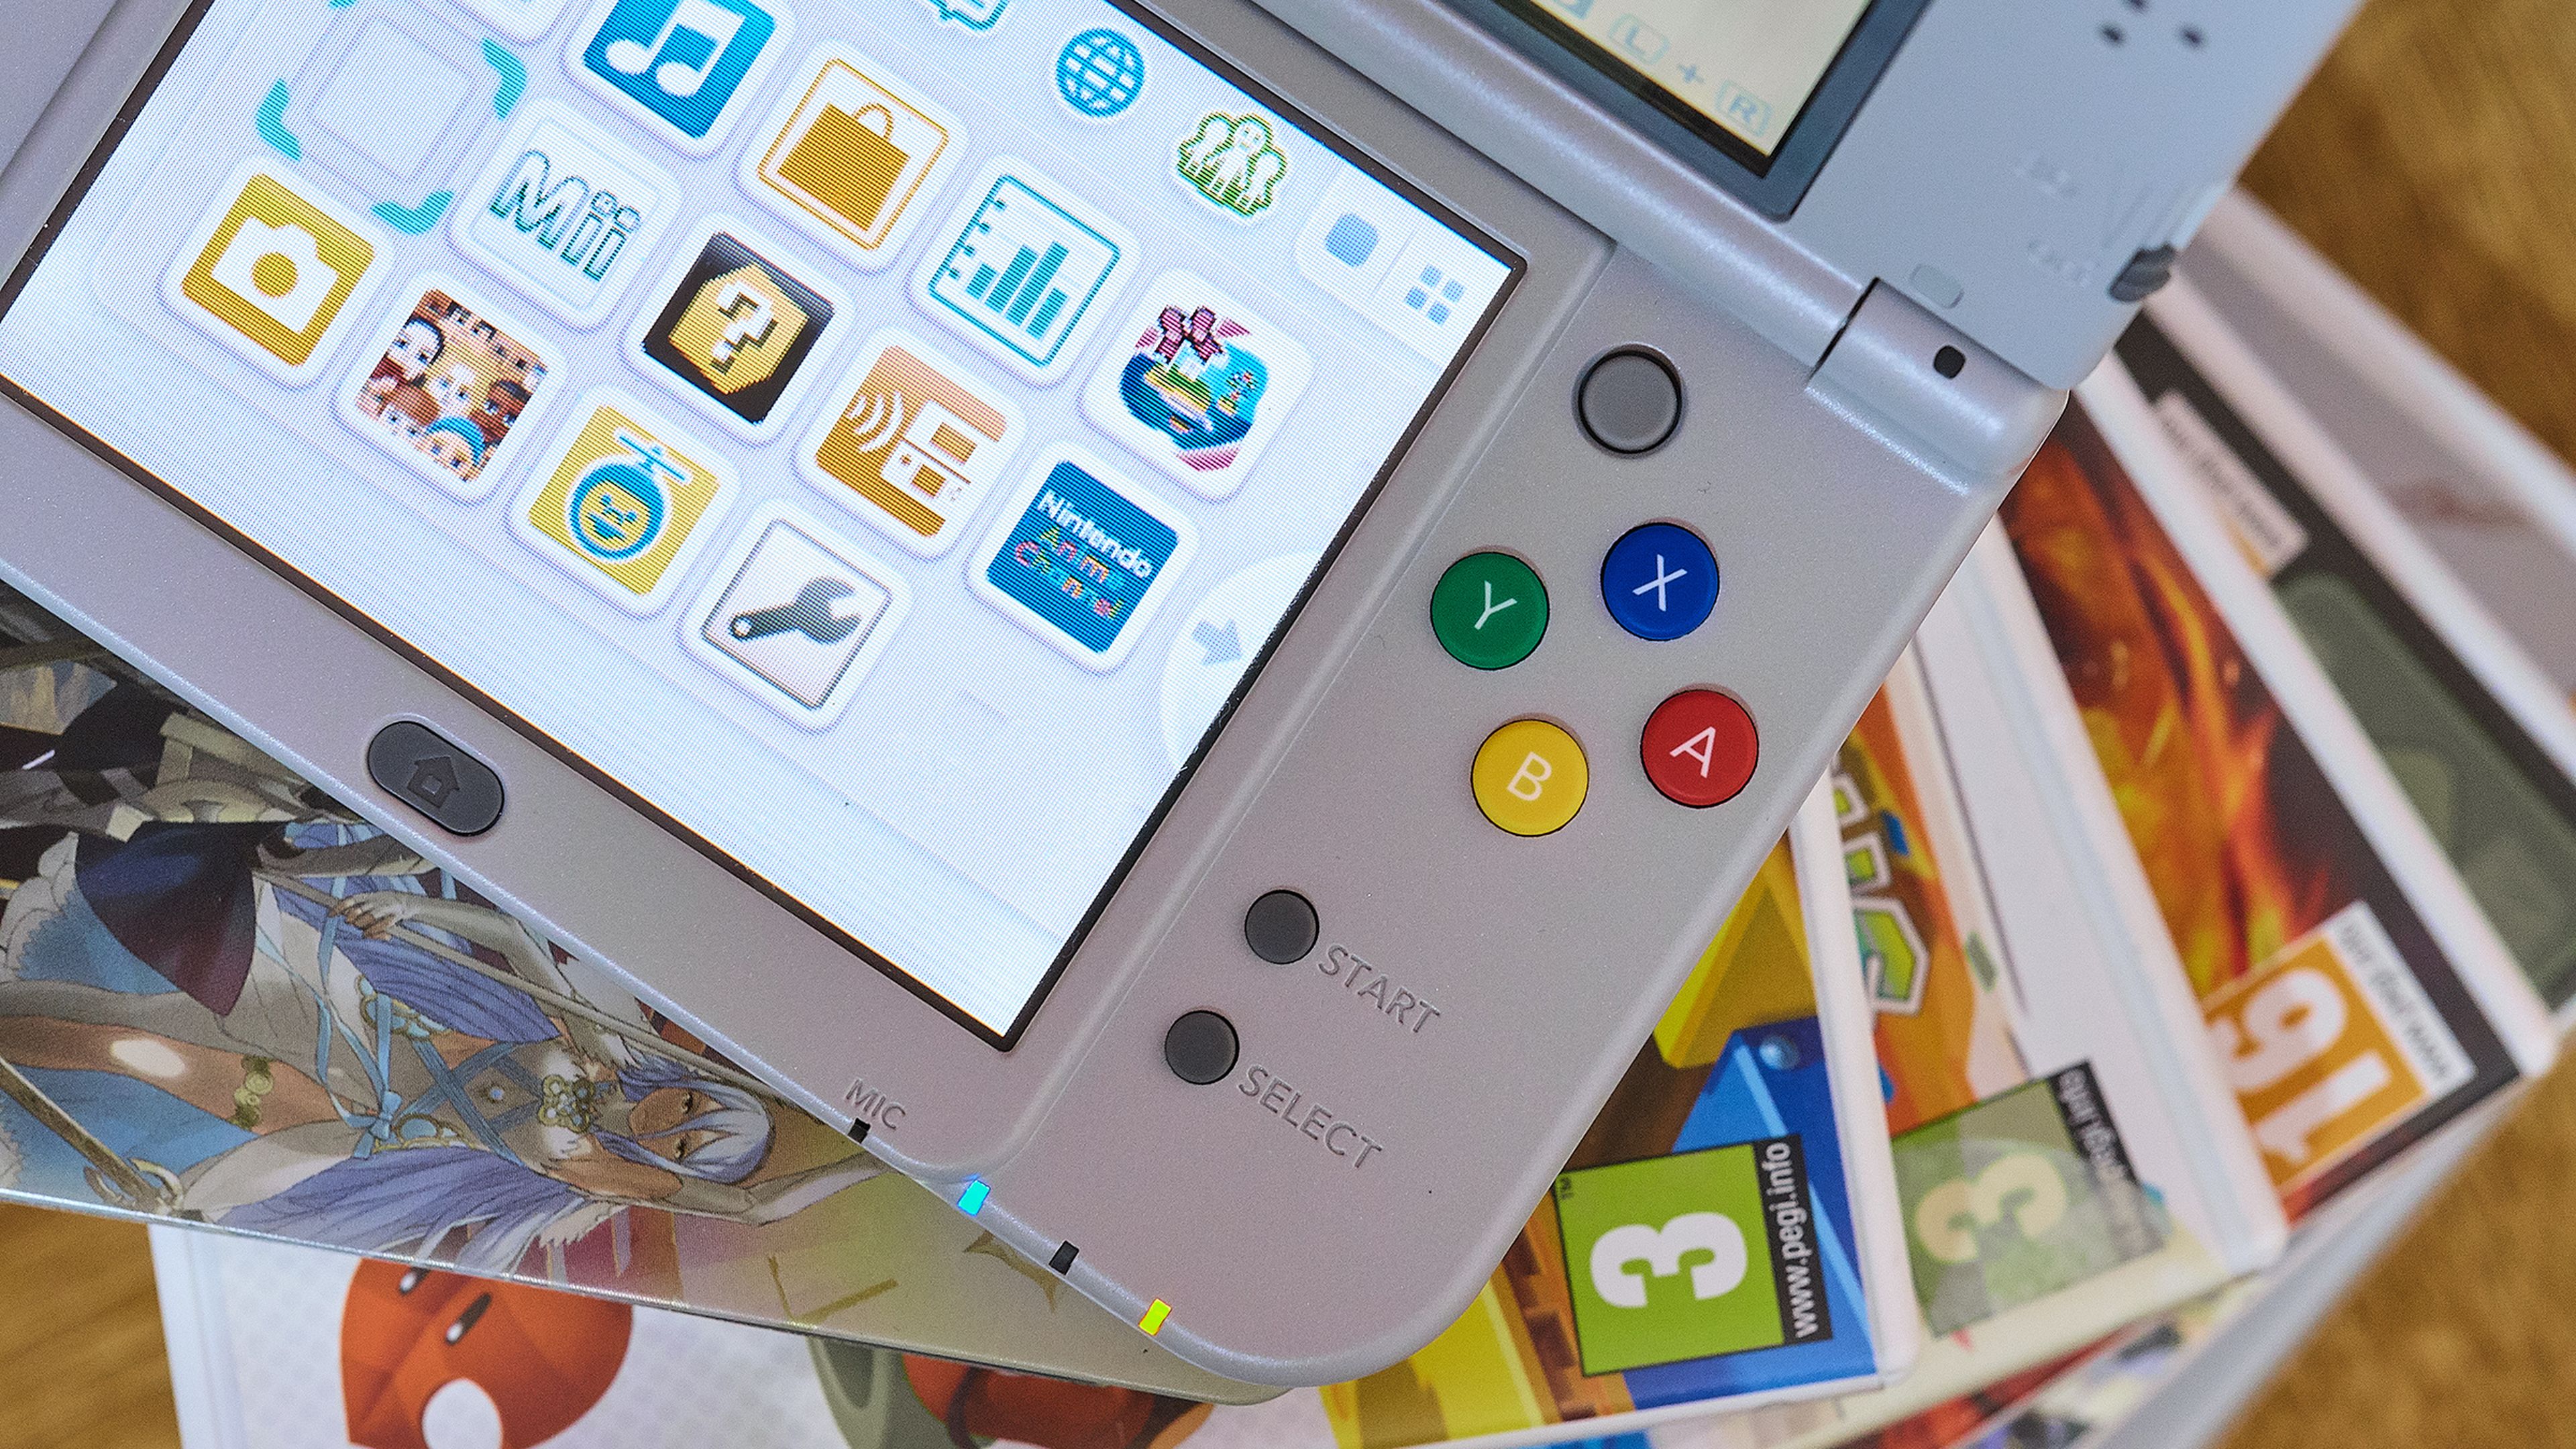 Las mejores ofertas en Nintendo 3DS juegos de video juego de plataformas